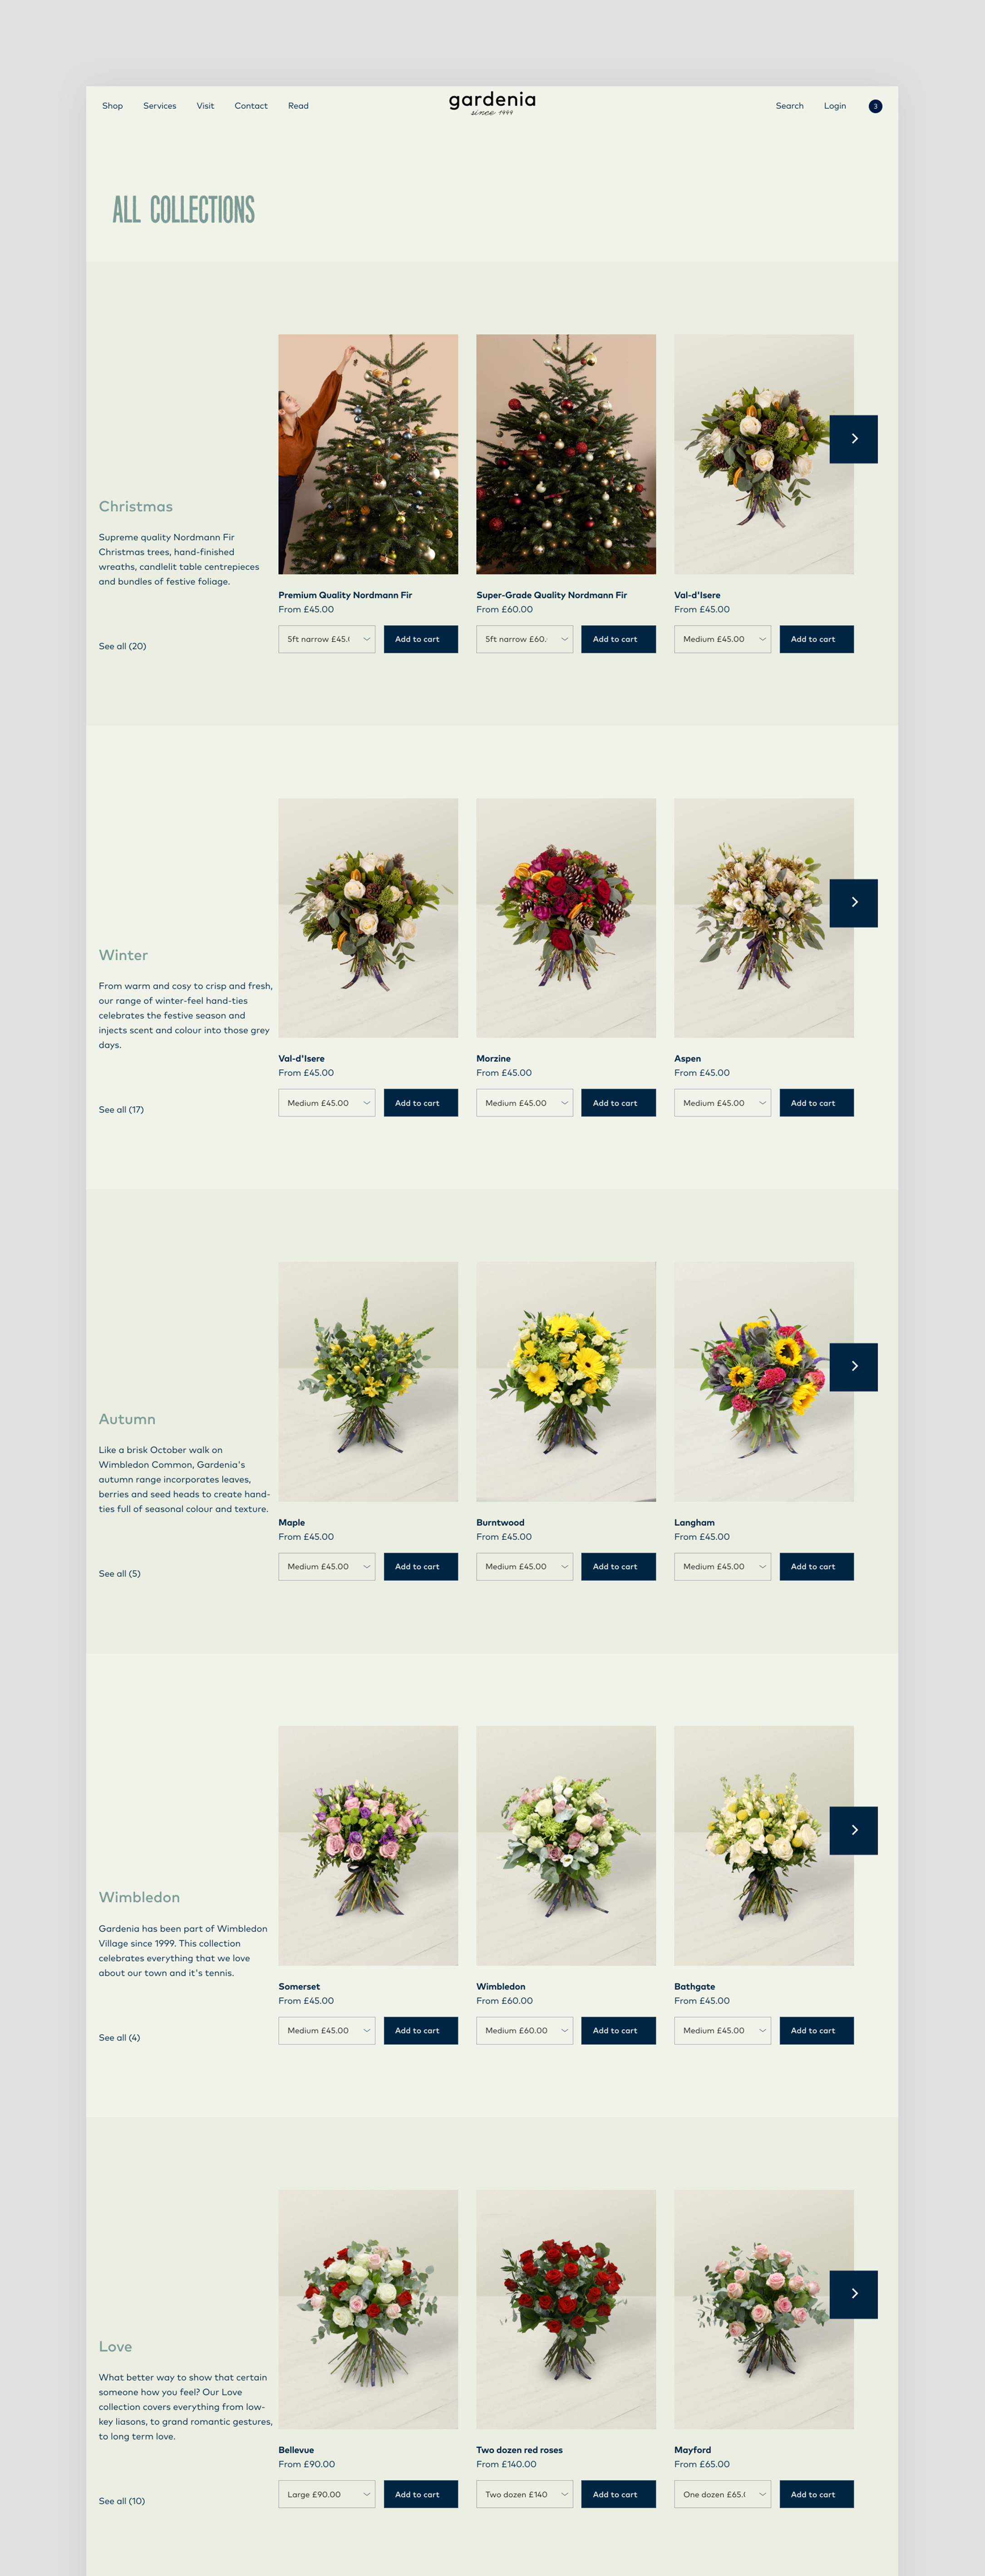 Gardenia_website_9